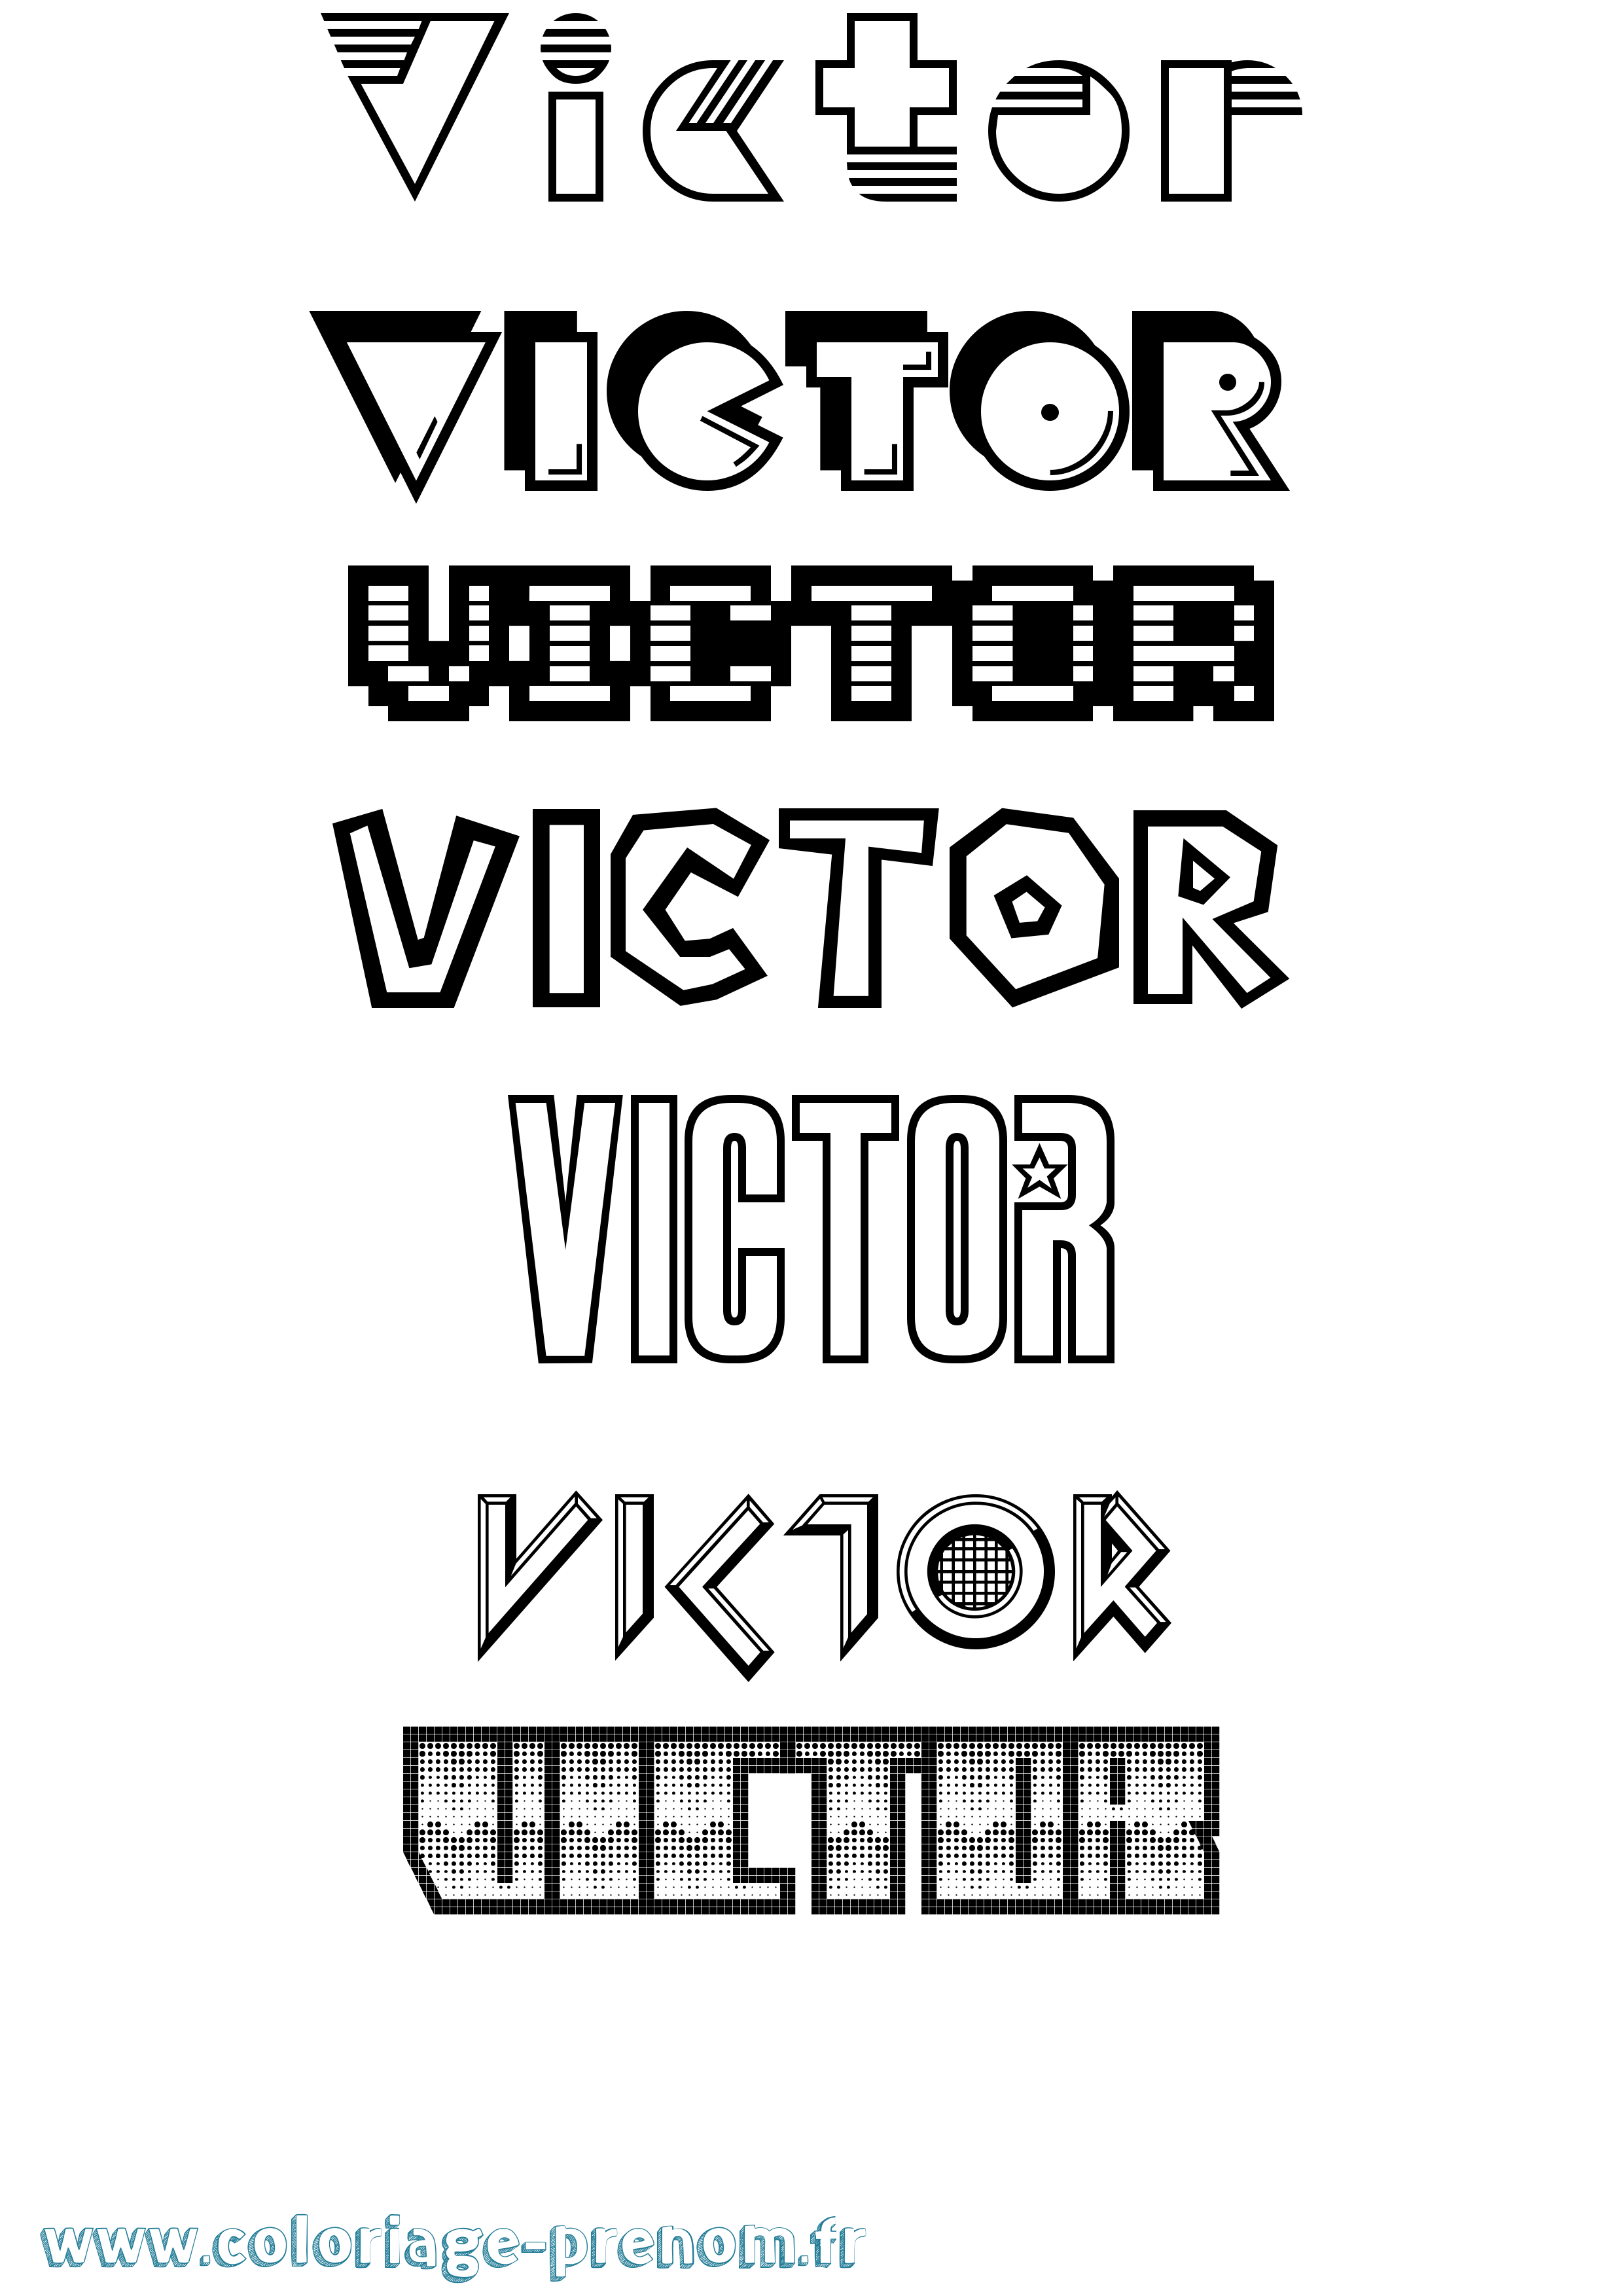 Coloriage prénom Victor Jeux Vidéos